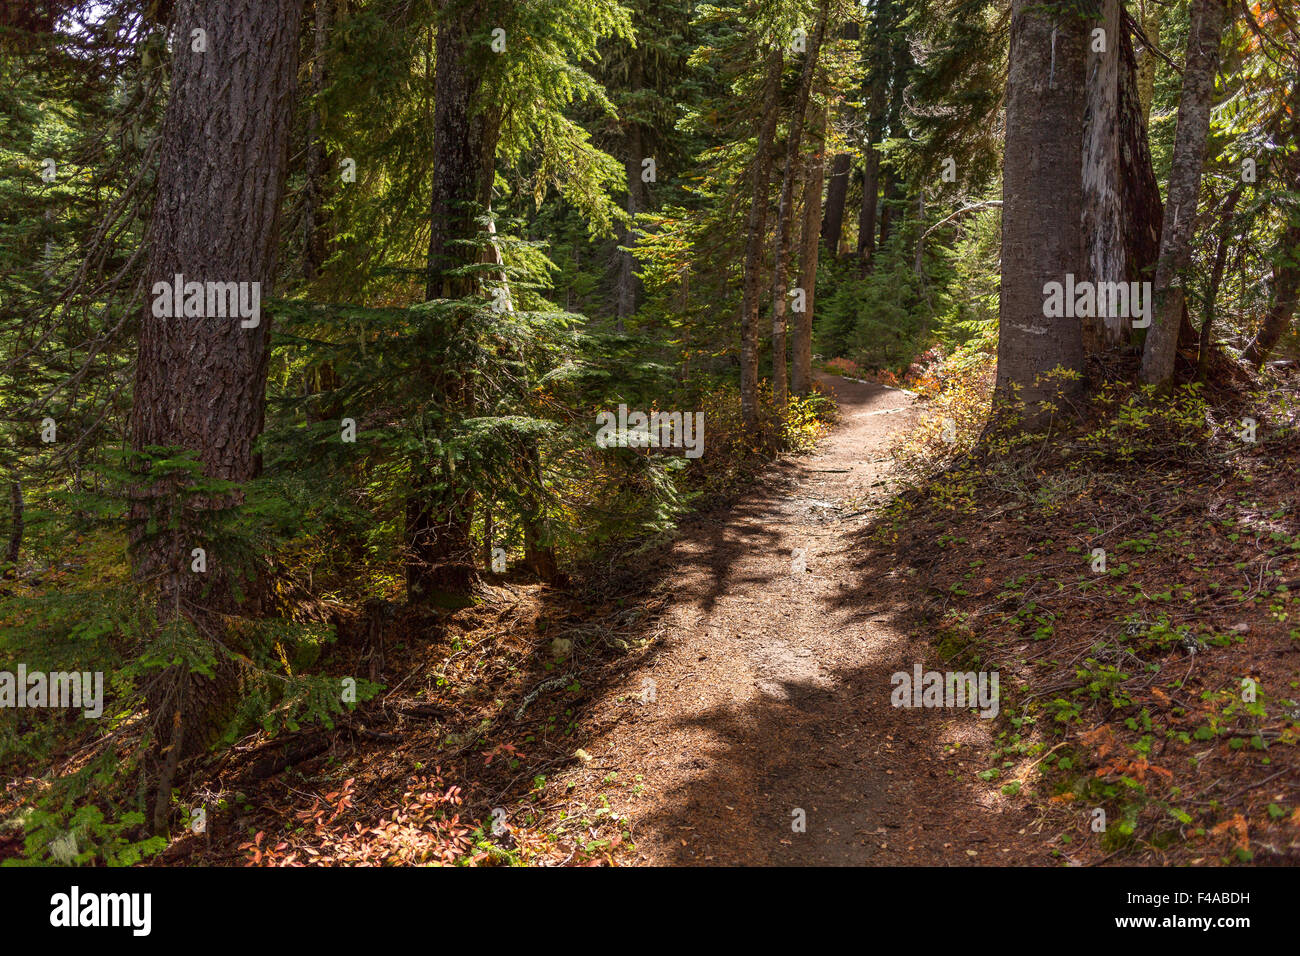 GIFFORD PINCHOT NATIONAL FOREST, WASHINGTON, USA - Trail in indischen Himmel Wildnis. Stockfoto